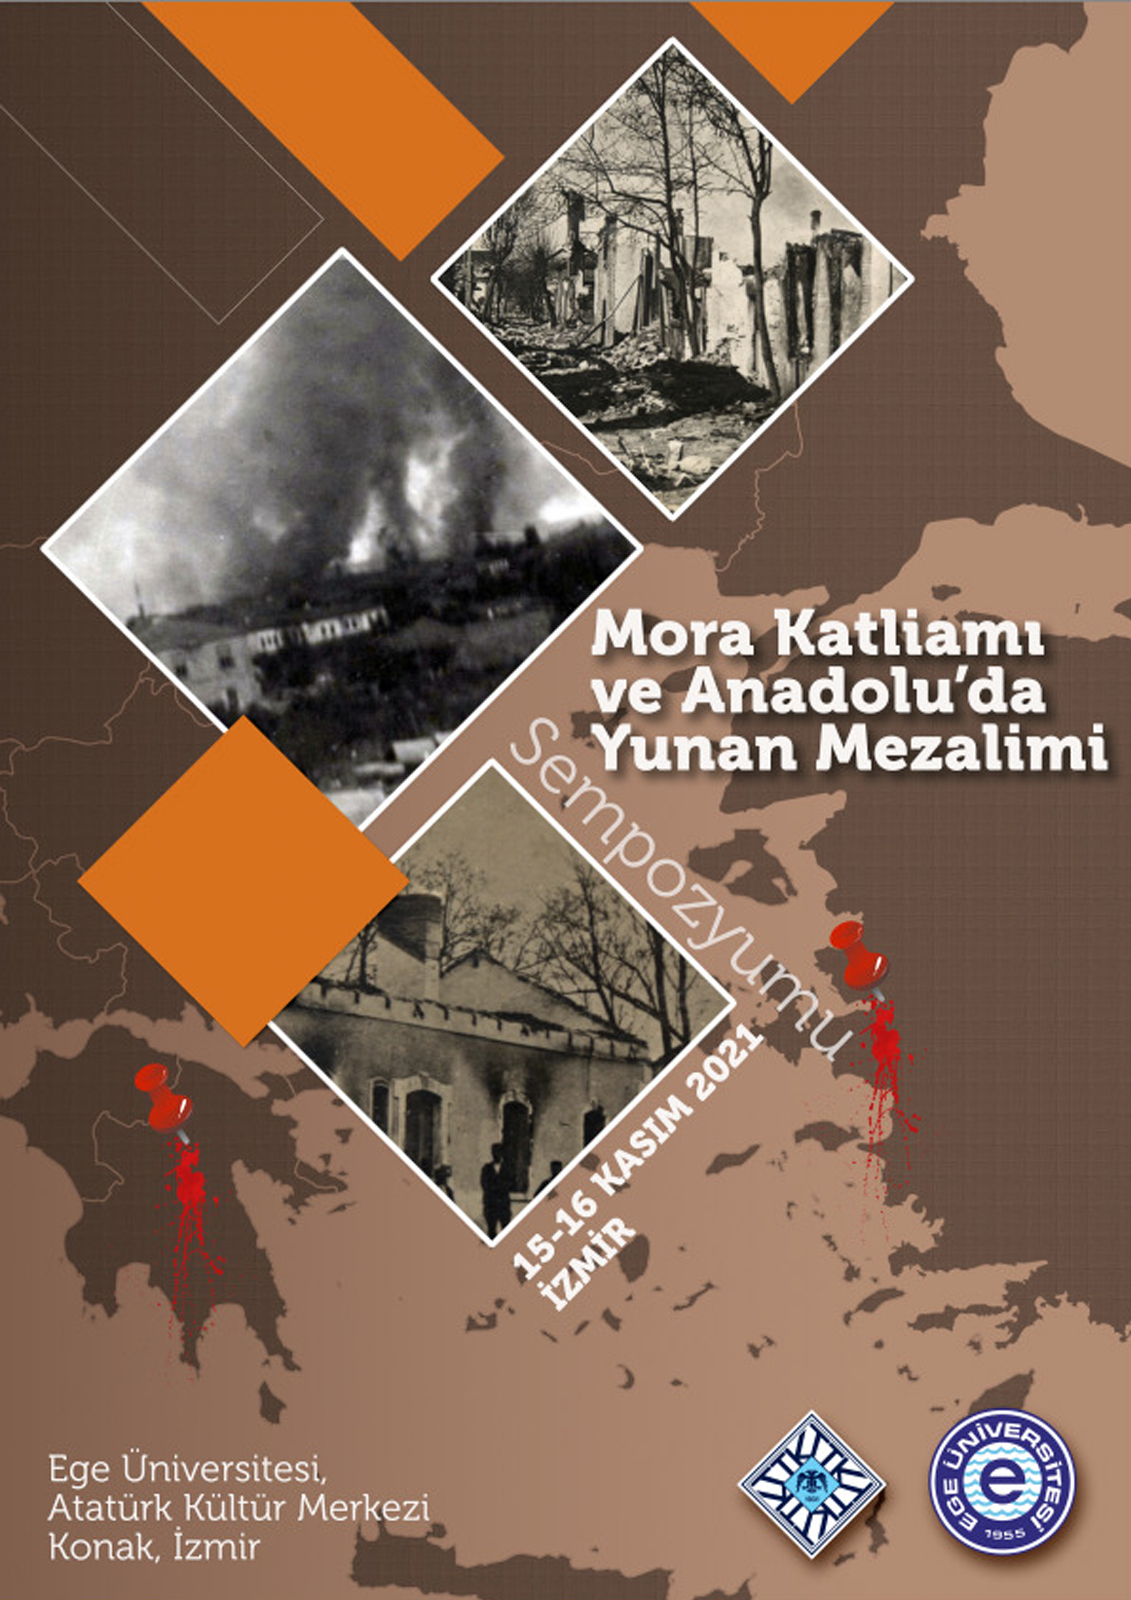 Mora Katliamı ve Anadolu’da Yunan Mezalimi Sempozyumu